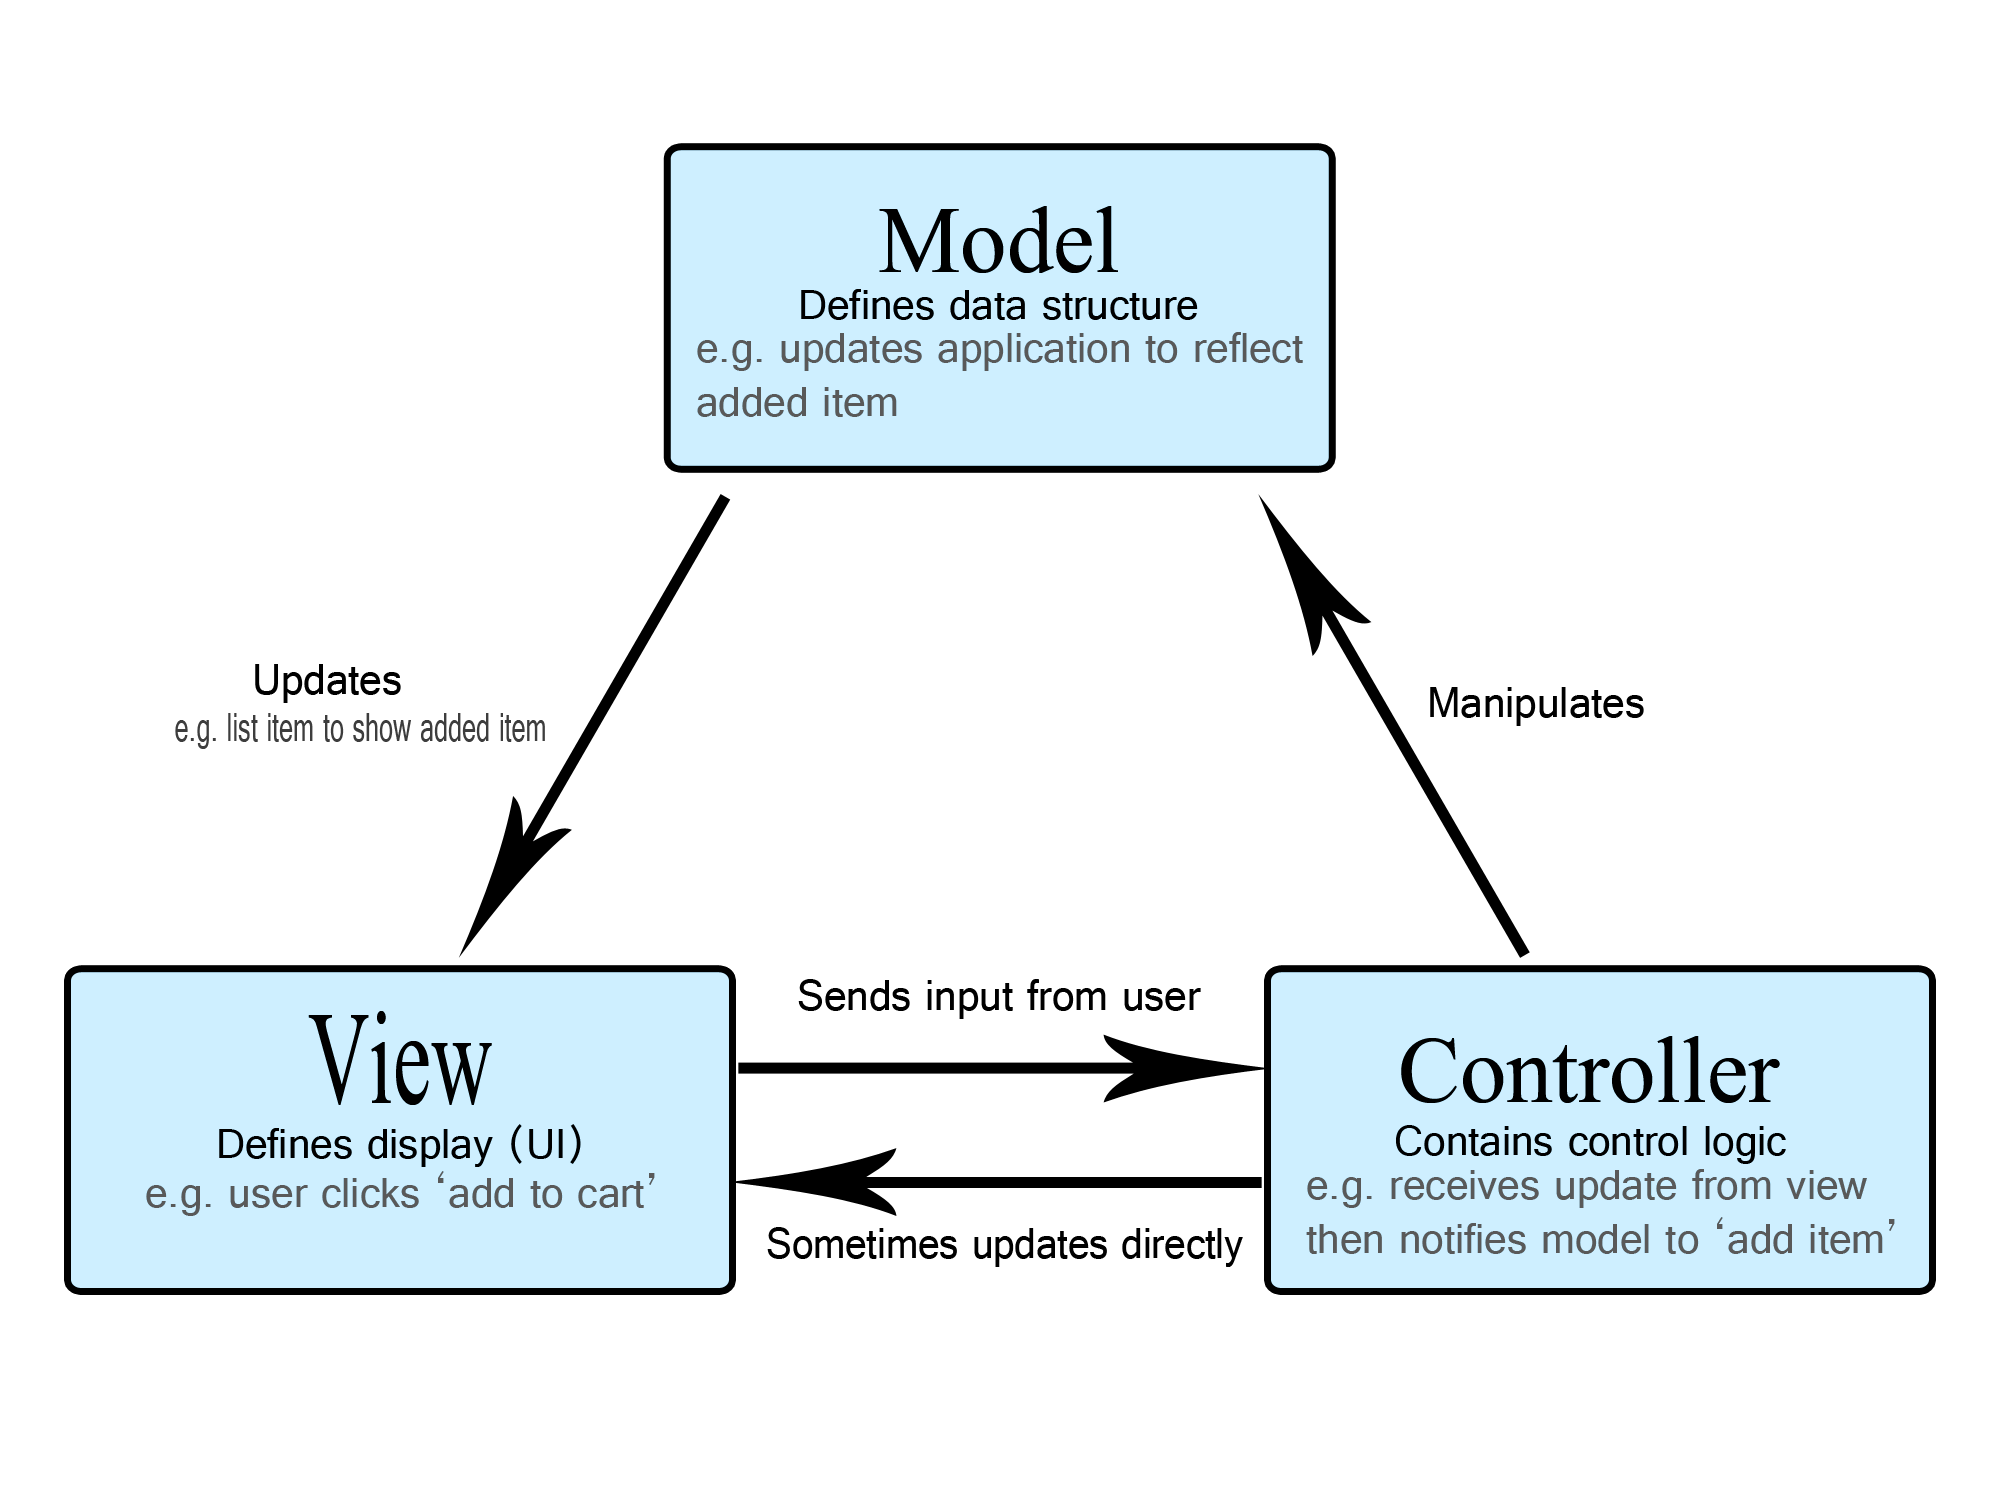 MVC Diagram